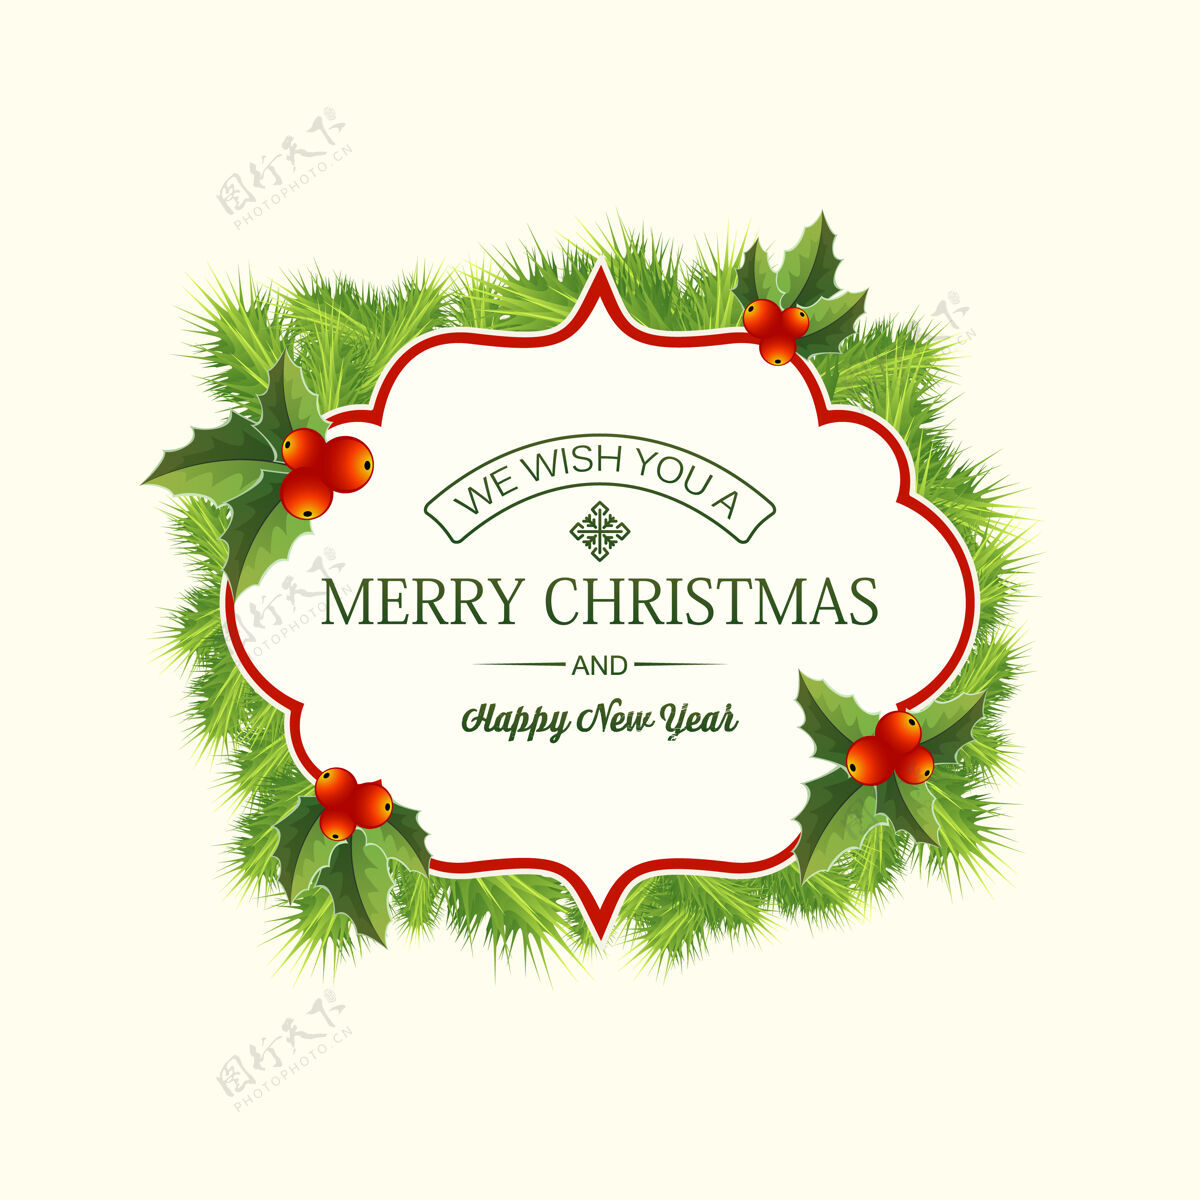 冬青现实的圣诞针叶花环卡片与问候语在框架冷杉树枝和冬青浆果诺埃尔自然快乐